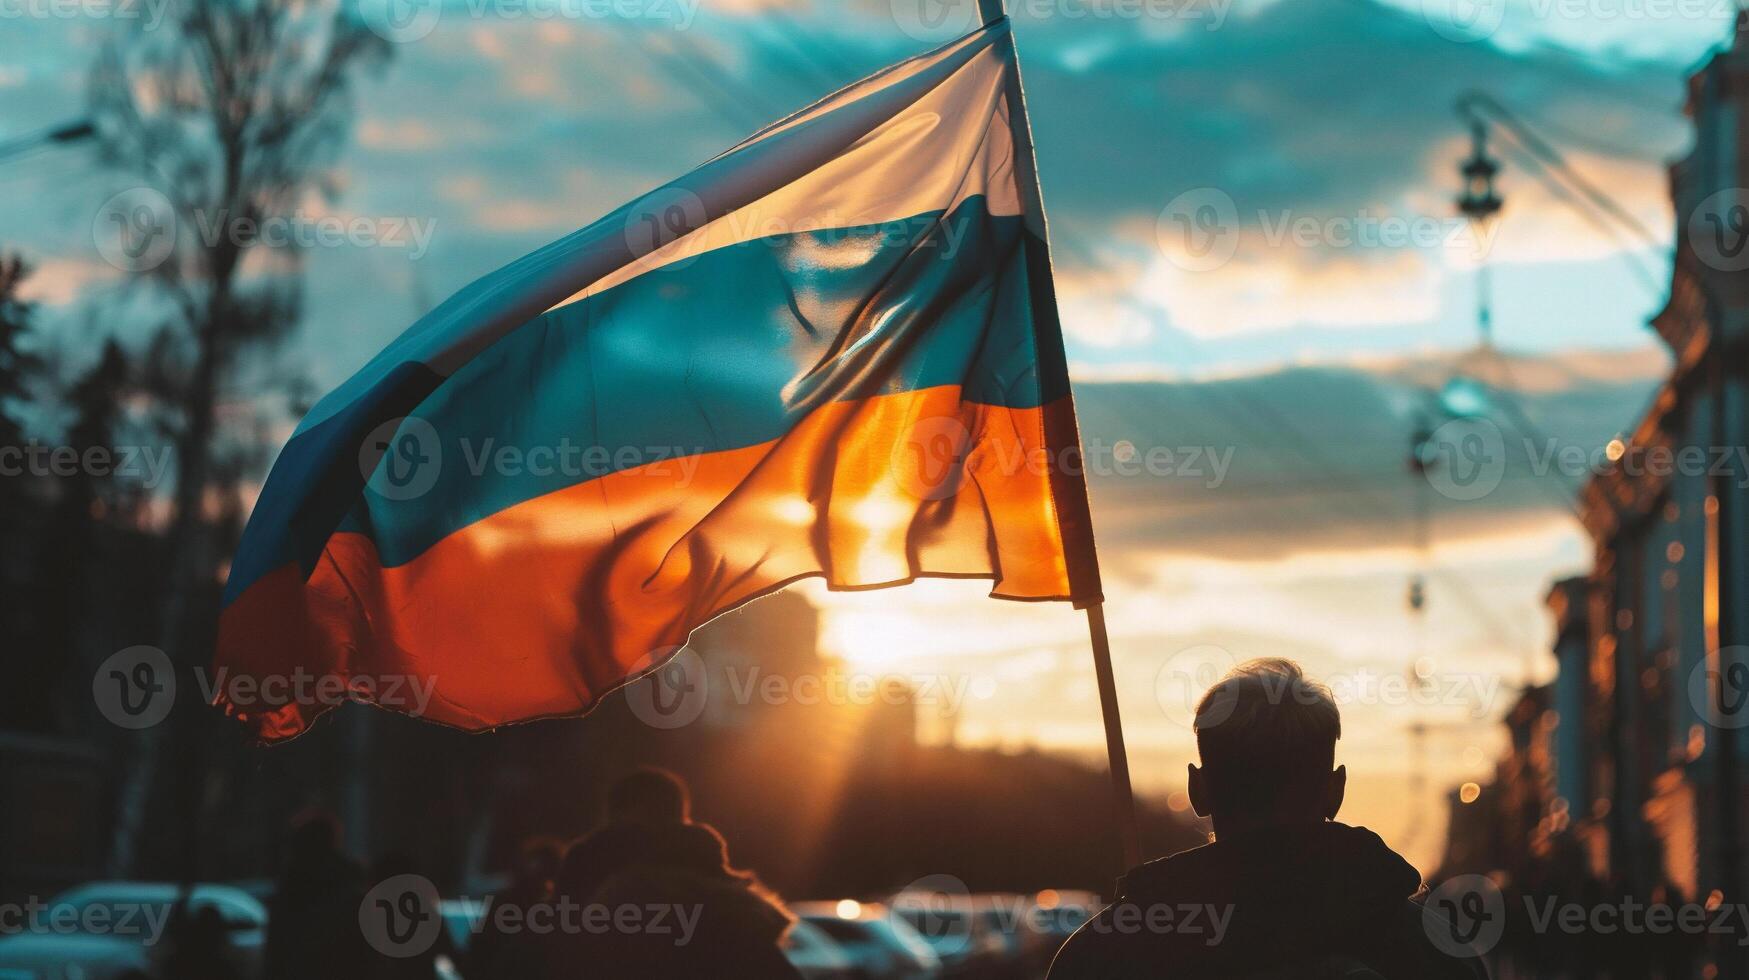 ai généré foule de gens avec russe drapeaux dans le ville. Russie. photo